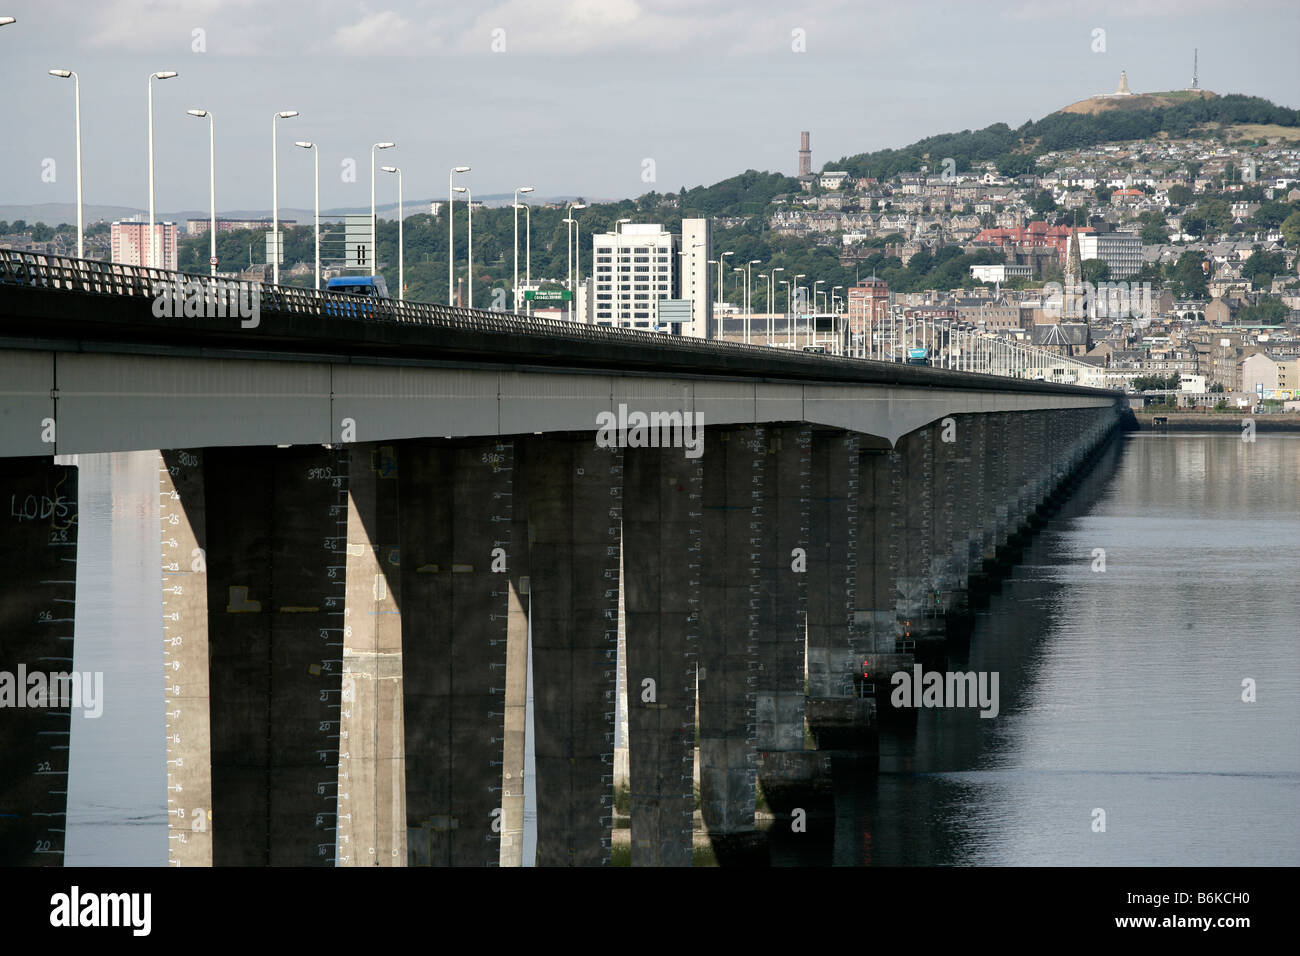 Ville de Dundee, Ecosse. Voir à au nord-ouest de la William Fairhurst conçu Tay pont routier sur l'estuaire de la rivière Tay. Banque D'Images